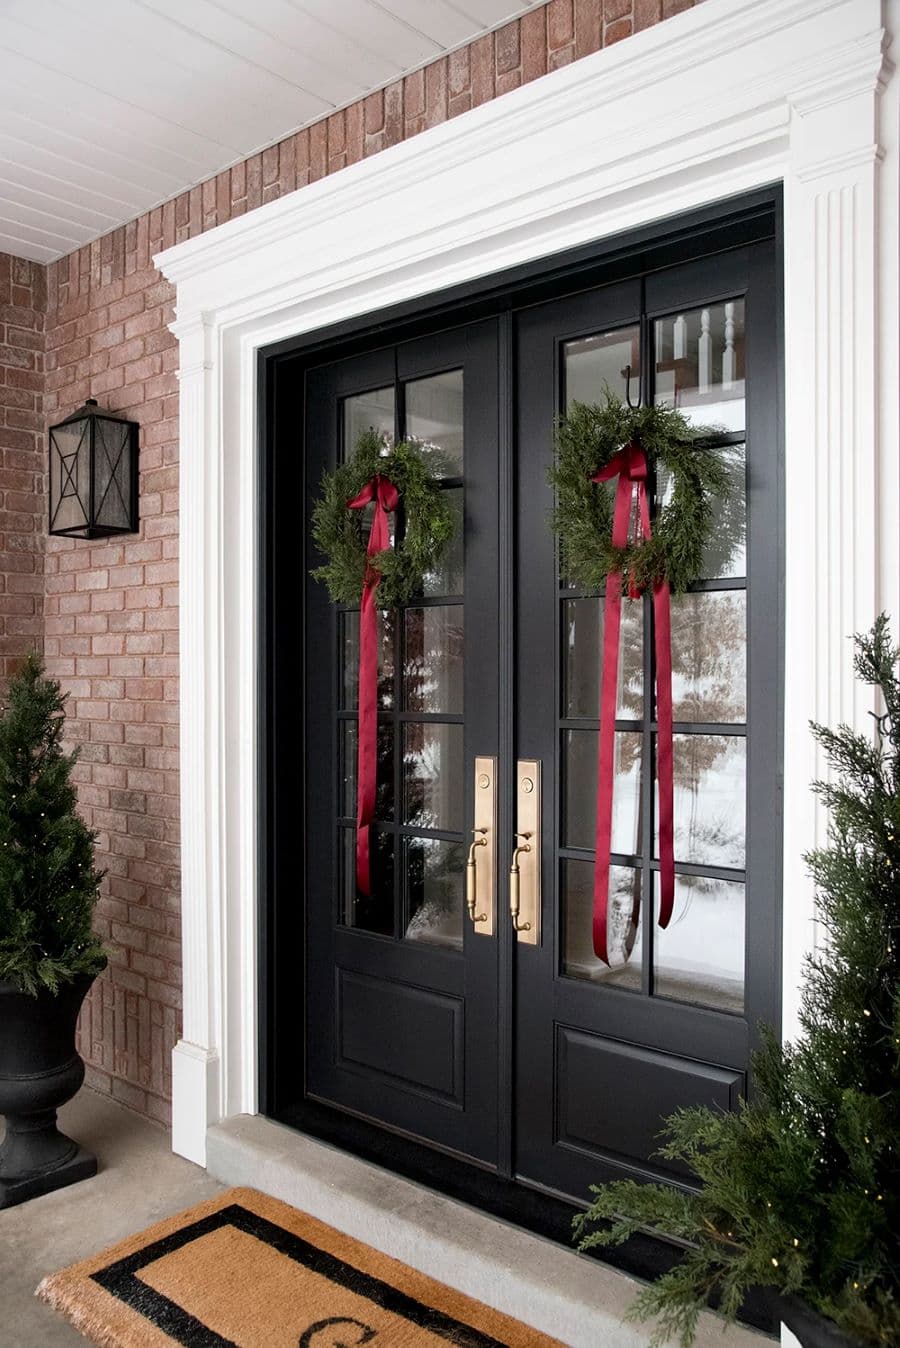 Gran puerta doble de entrada. Es de madera negra y tiene ventanas. De cada puerta cuelga una corona navideña de pino, con una cinta roja colgando. Casa con muros de ladrillo y dos pinos a los costados de la puerta.